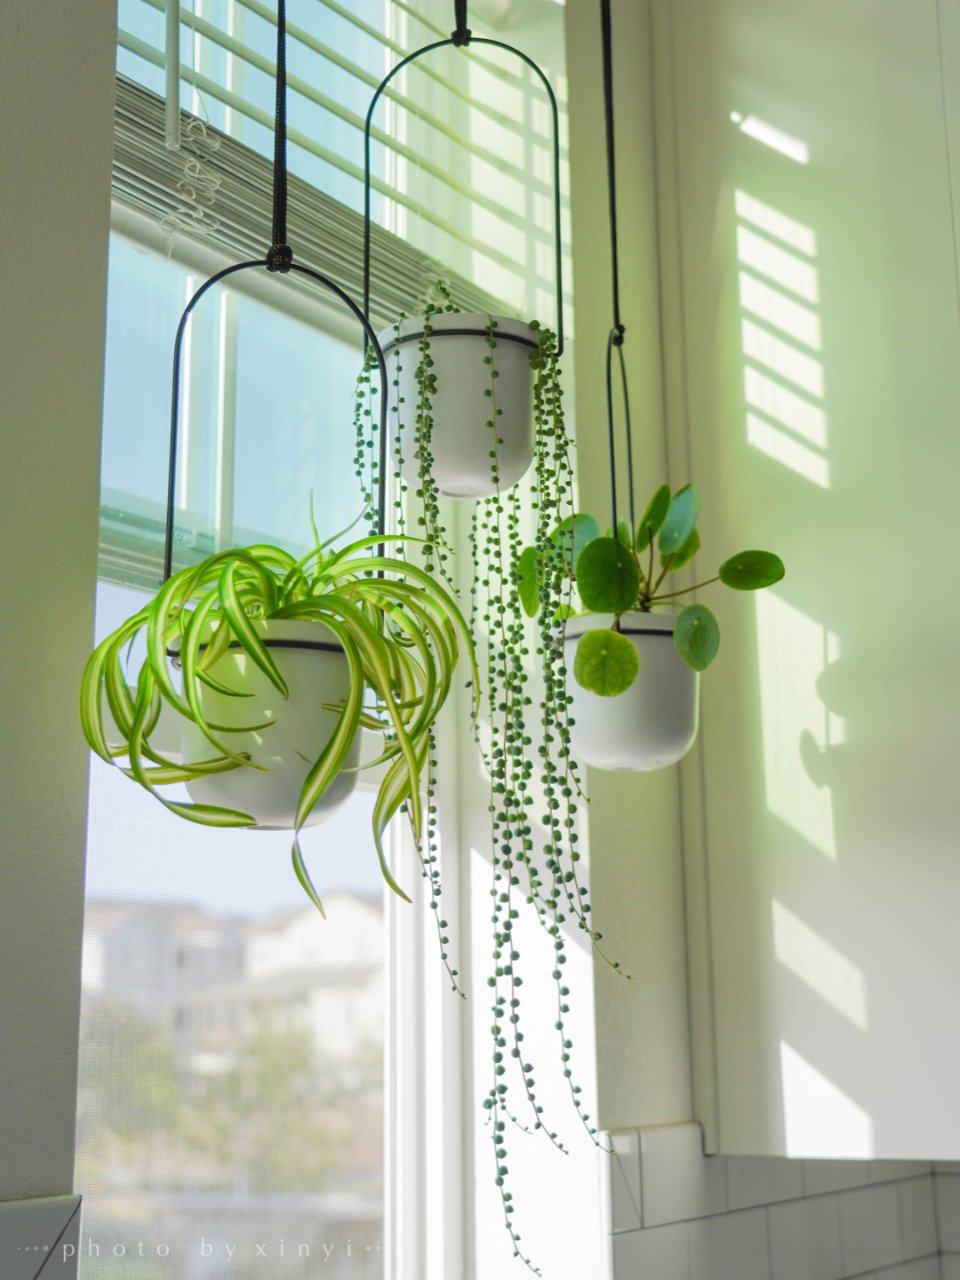 厨房窗口垂吊植物,抬头一抹绿太治愈了